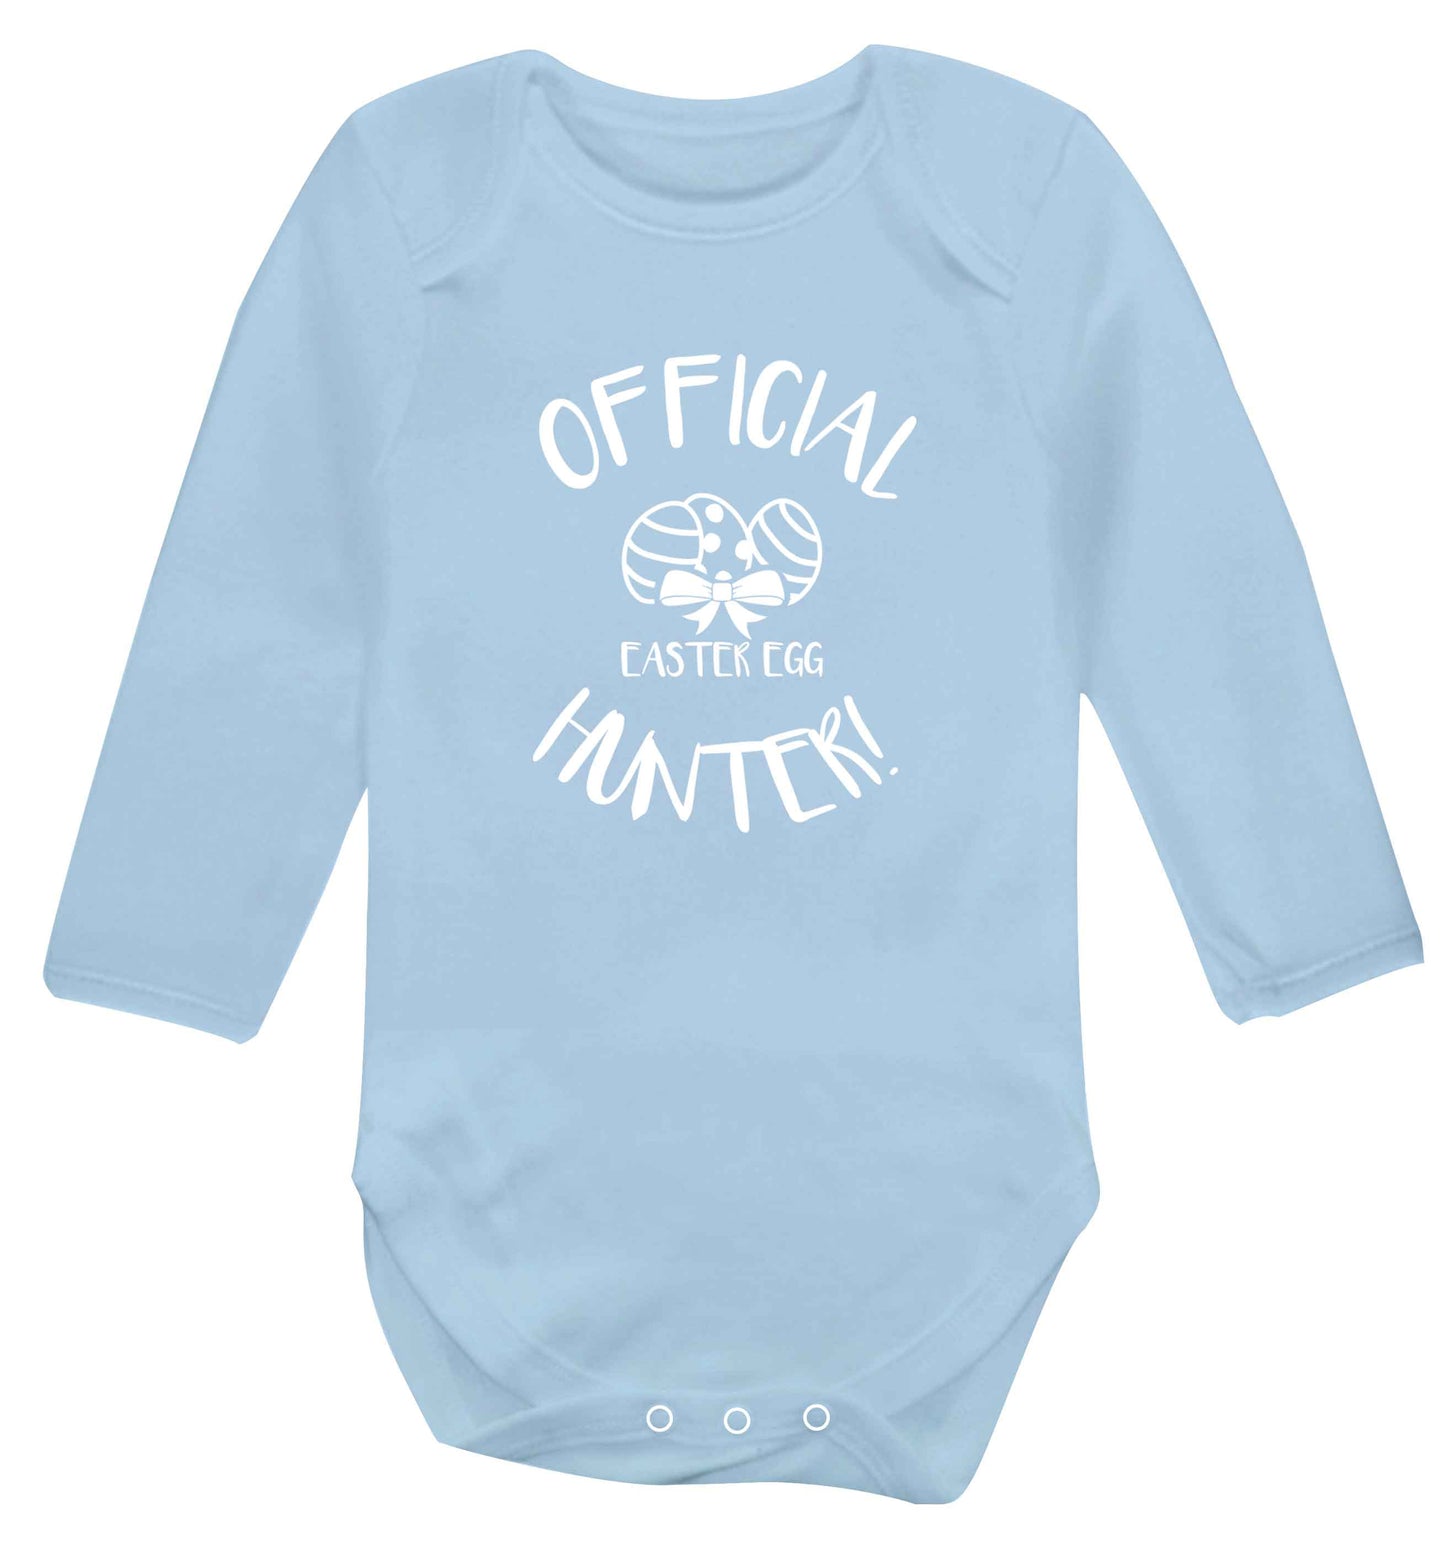 Official Easter egg hunter! baby vest long sleeved pale blue 6-12 months